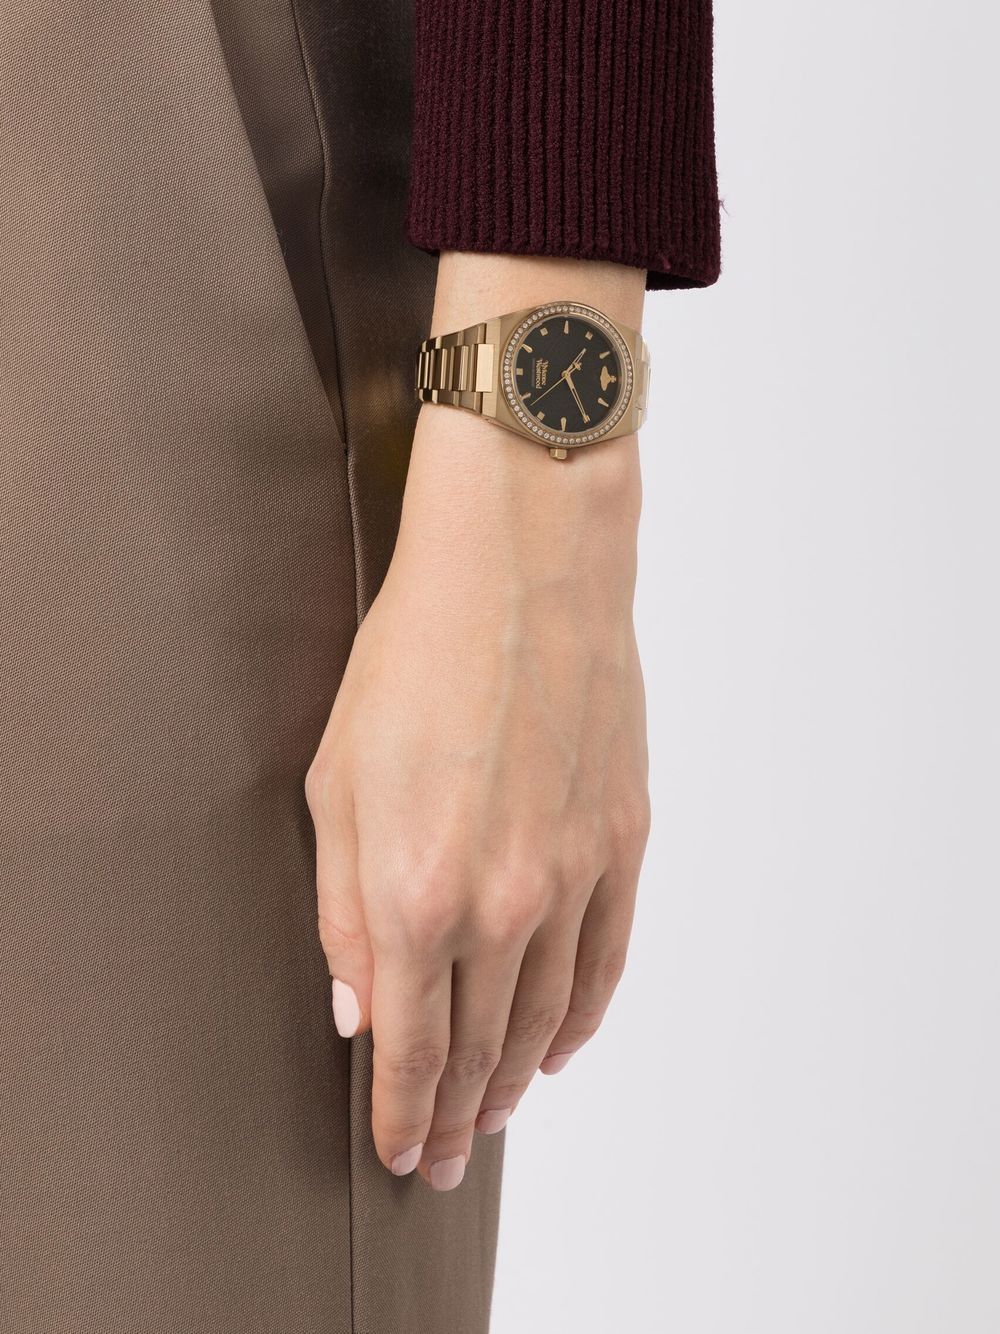 Vivienne Westwood Charterhouse horloge - Goud